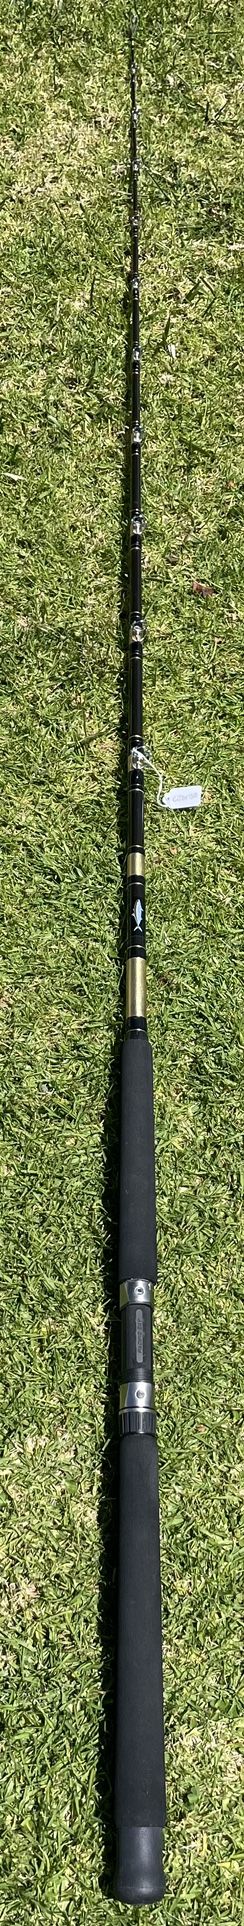 Seeker Custom CJBF80 Fishing Rod